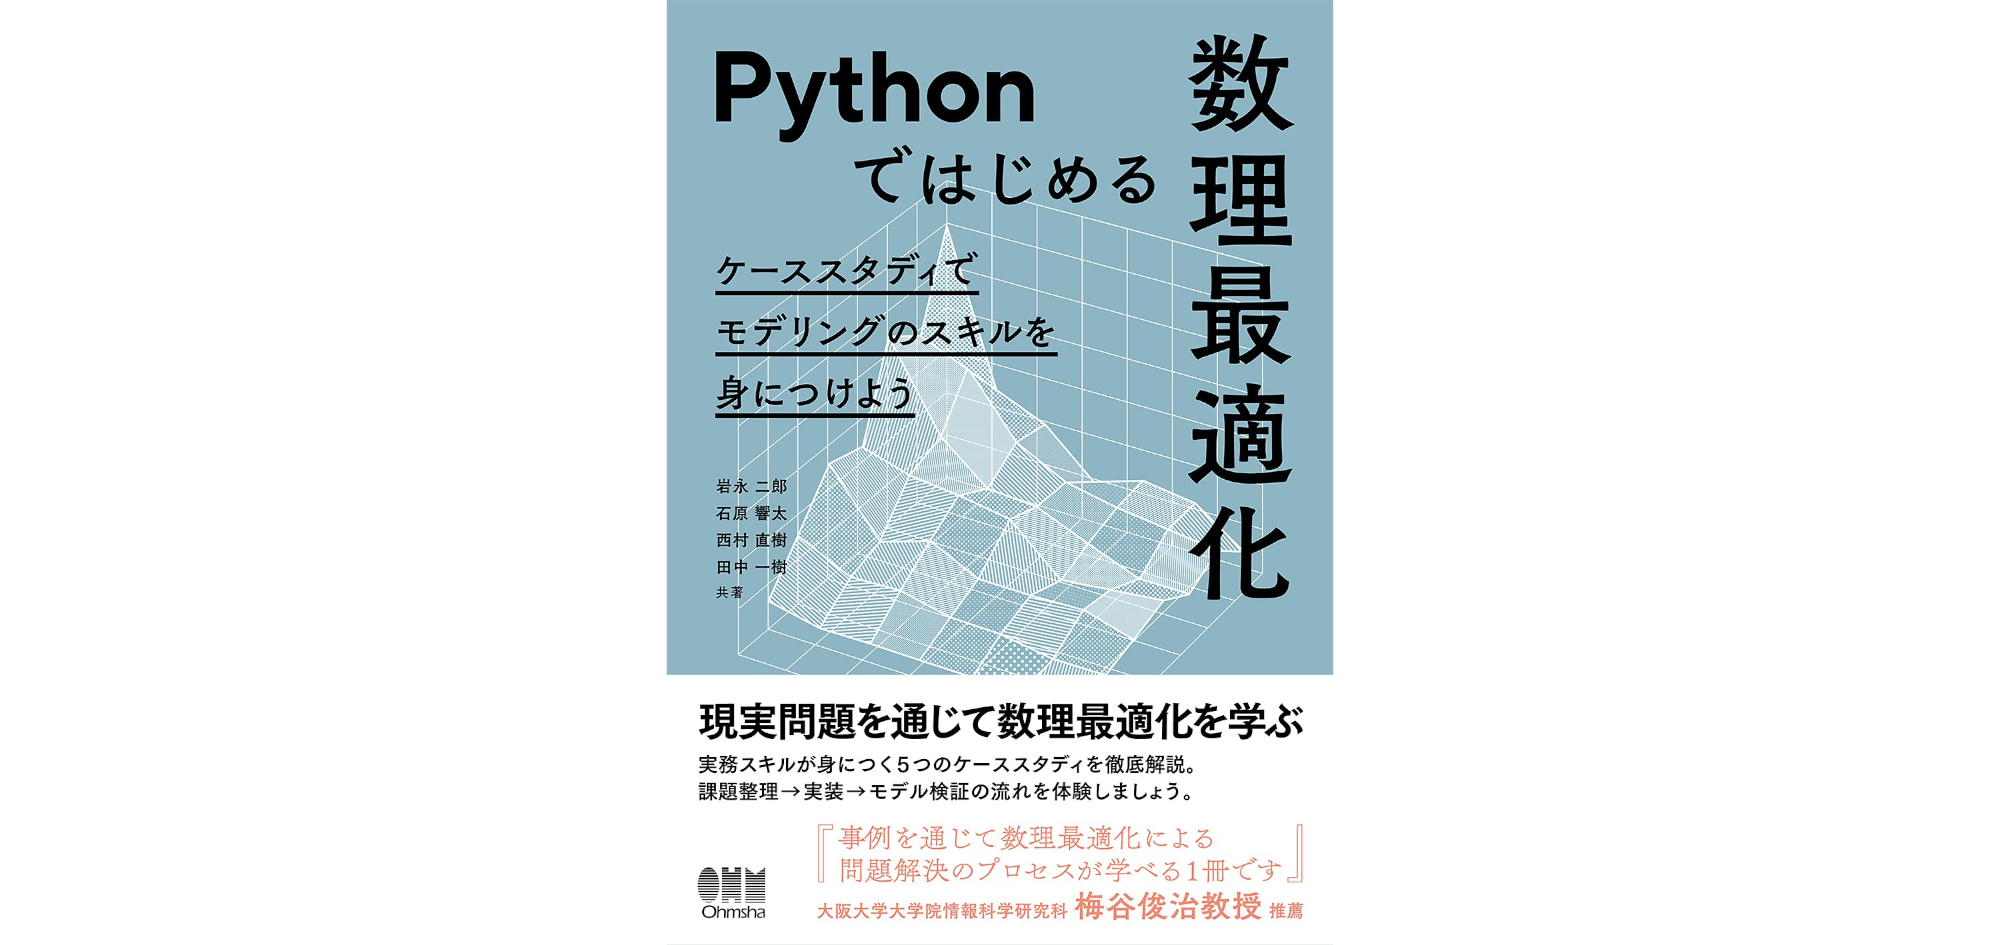 Pythonではじめる数理最適化: ケーススタディでモデリングのスキルを身につけよう